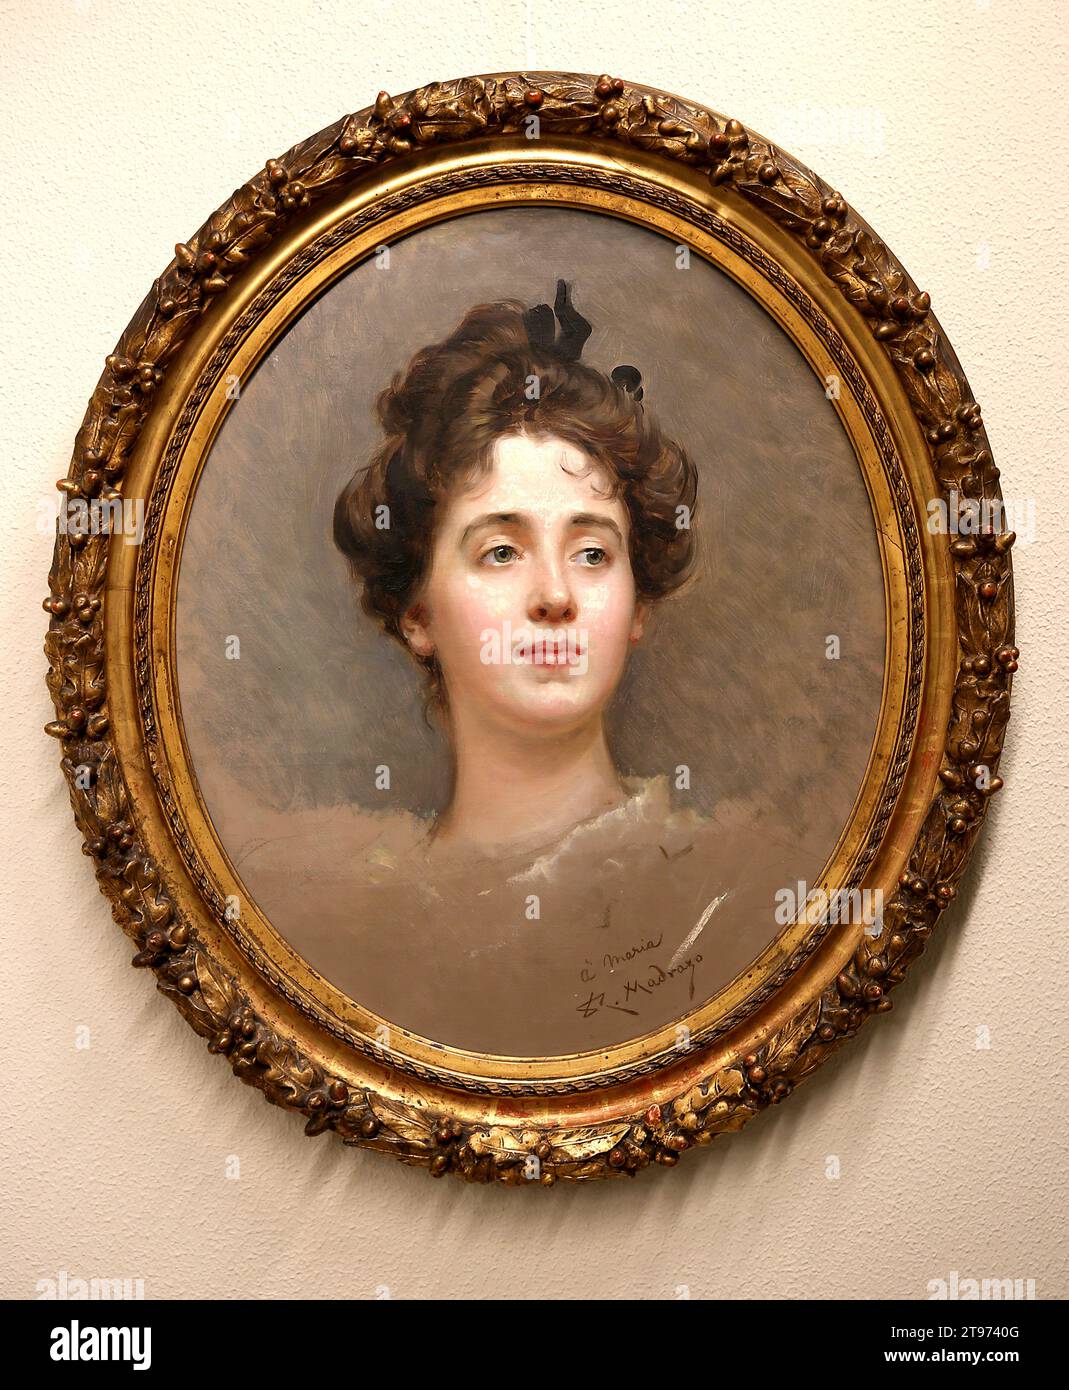 Porträt von Maria, von Raimundo de Madrazo (1841-1920) Öl auf Leinwand C. 1890. Museum von Montserrat, Barcelona, Katalonien, Spanien. Stockfoto